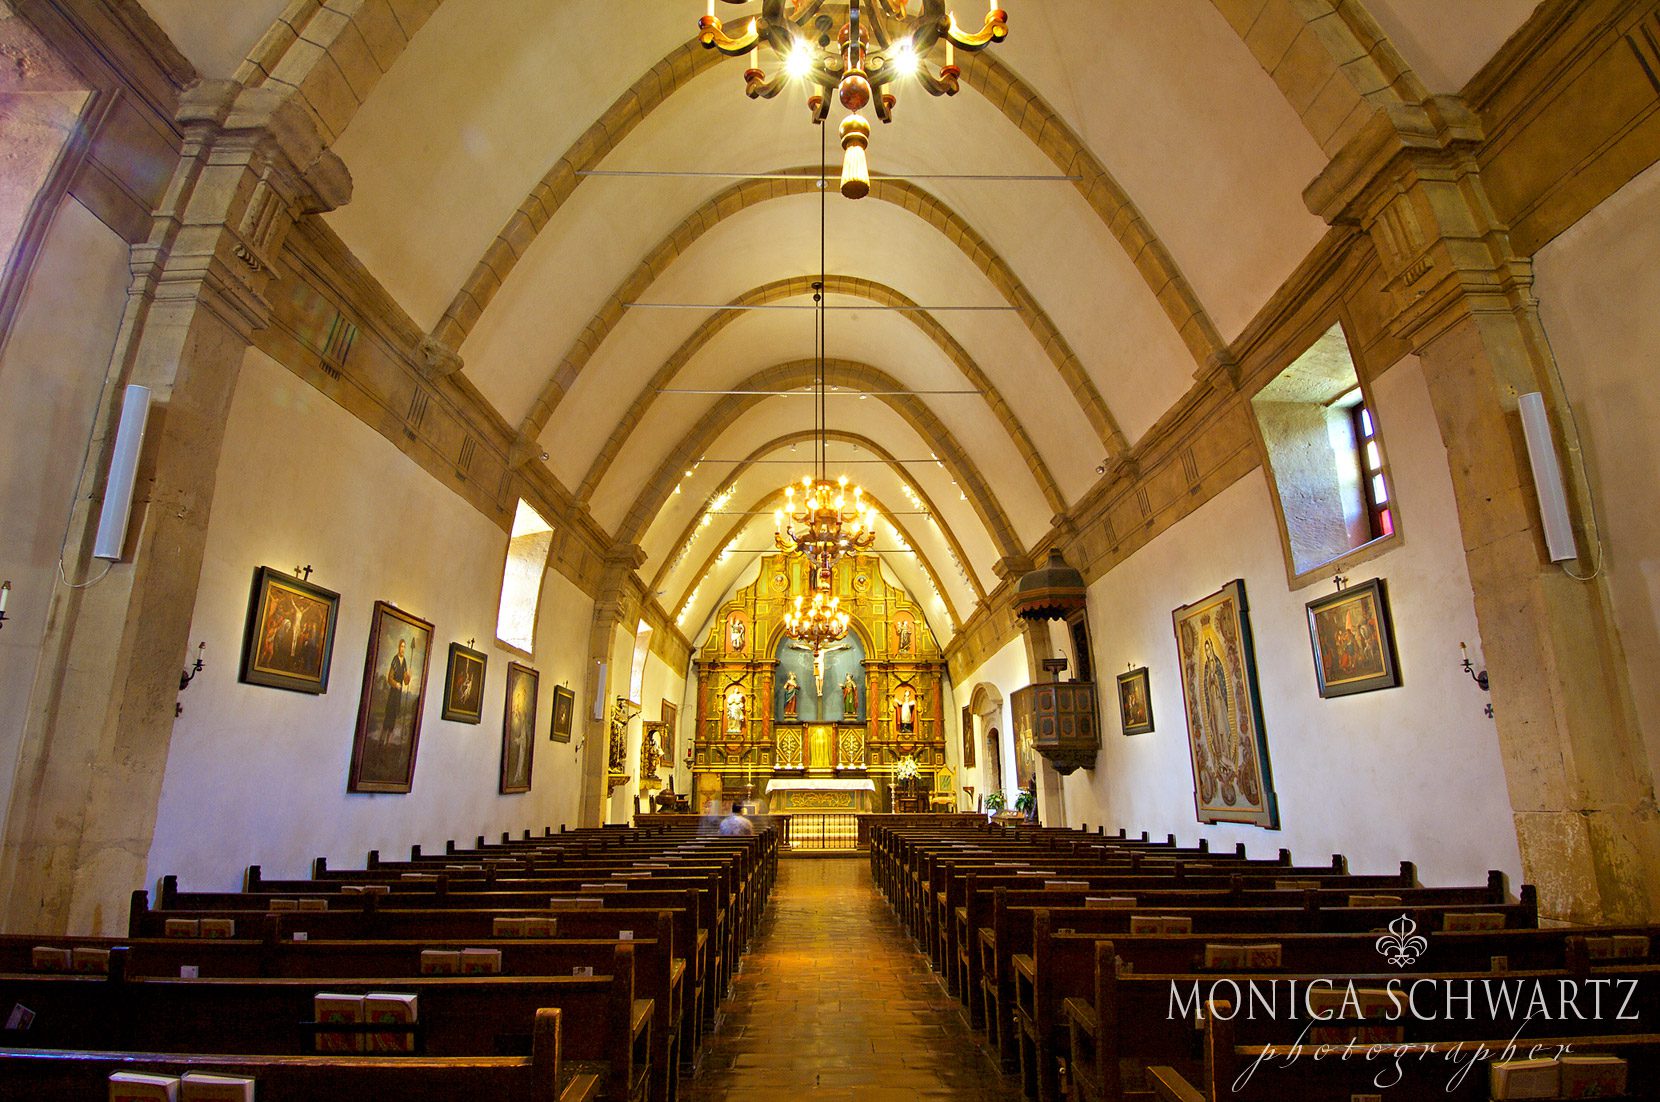 The-Basilica-of-Mission-San-Carlos-Borromeo-Del-Rio-Carmelo-Carmel-by-the-Sea-California